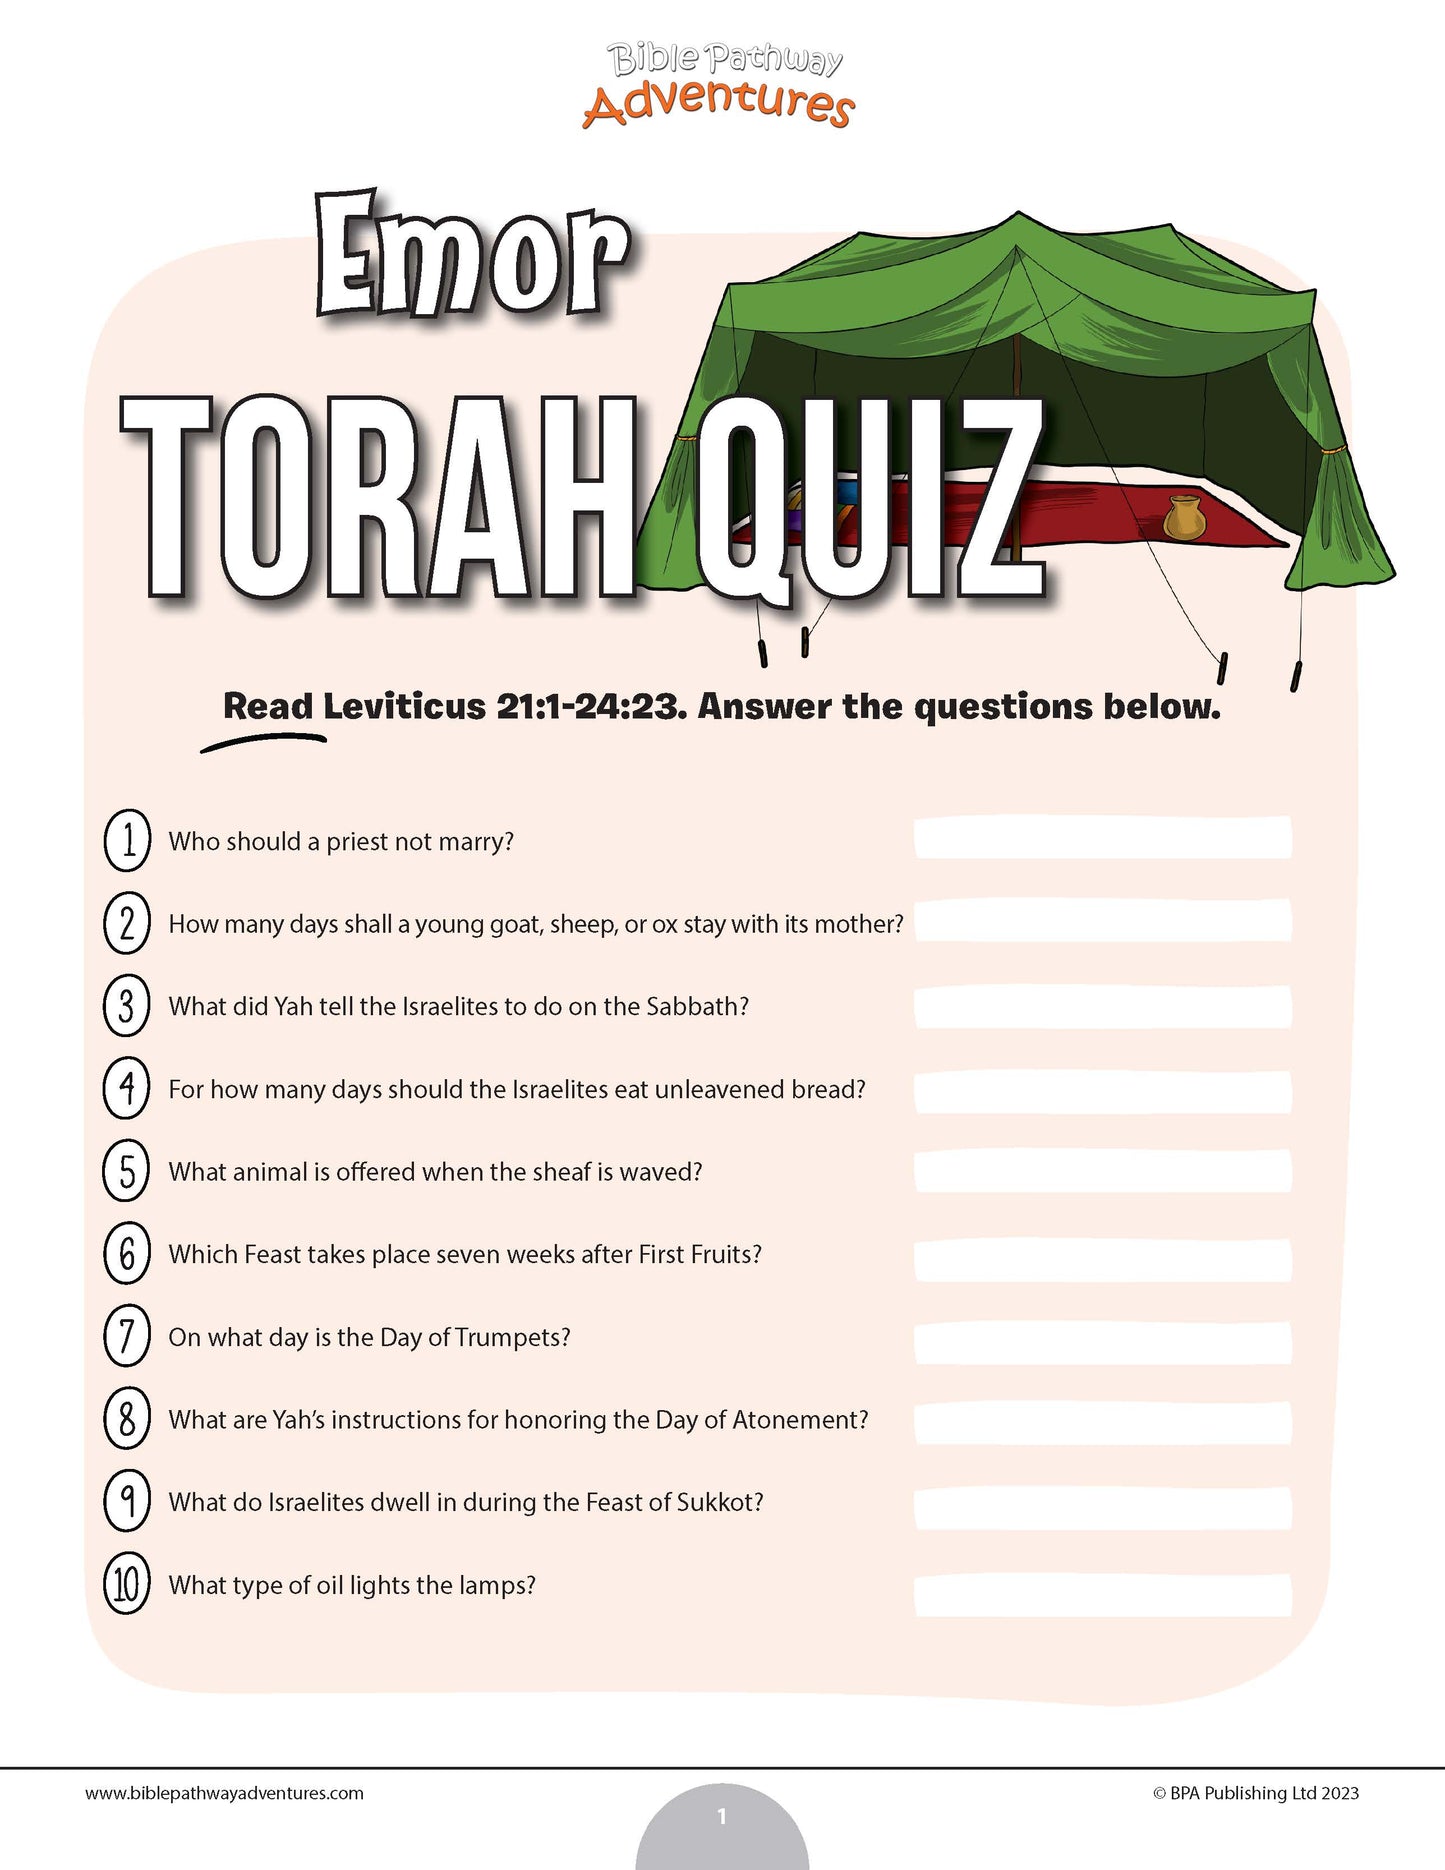 Emor Torah quiz